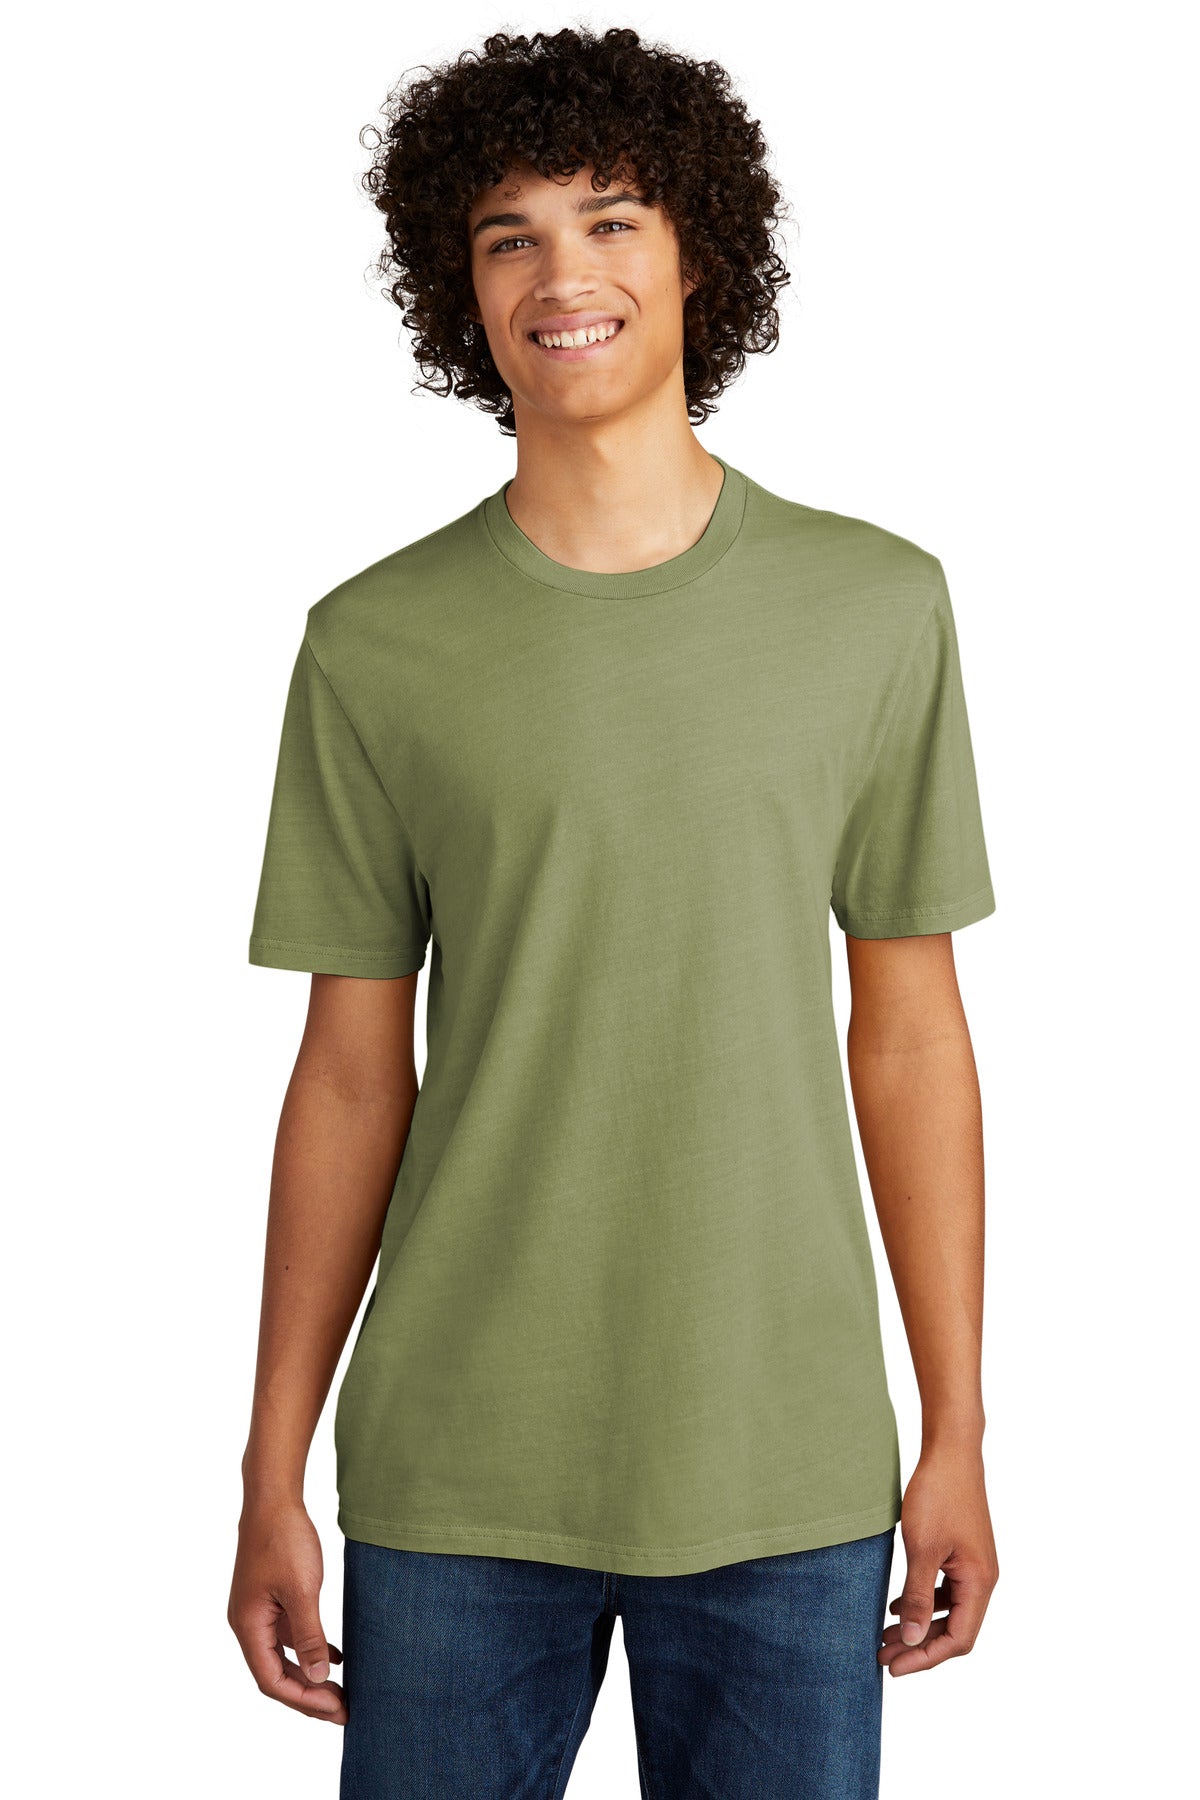 Photo of AllMade T-Shirts AL2400  color  Lichen Green